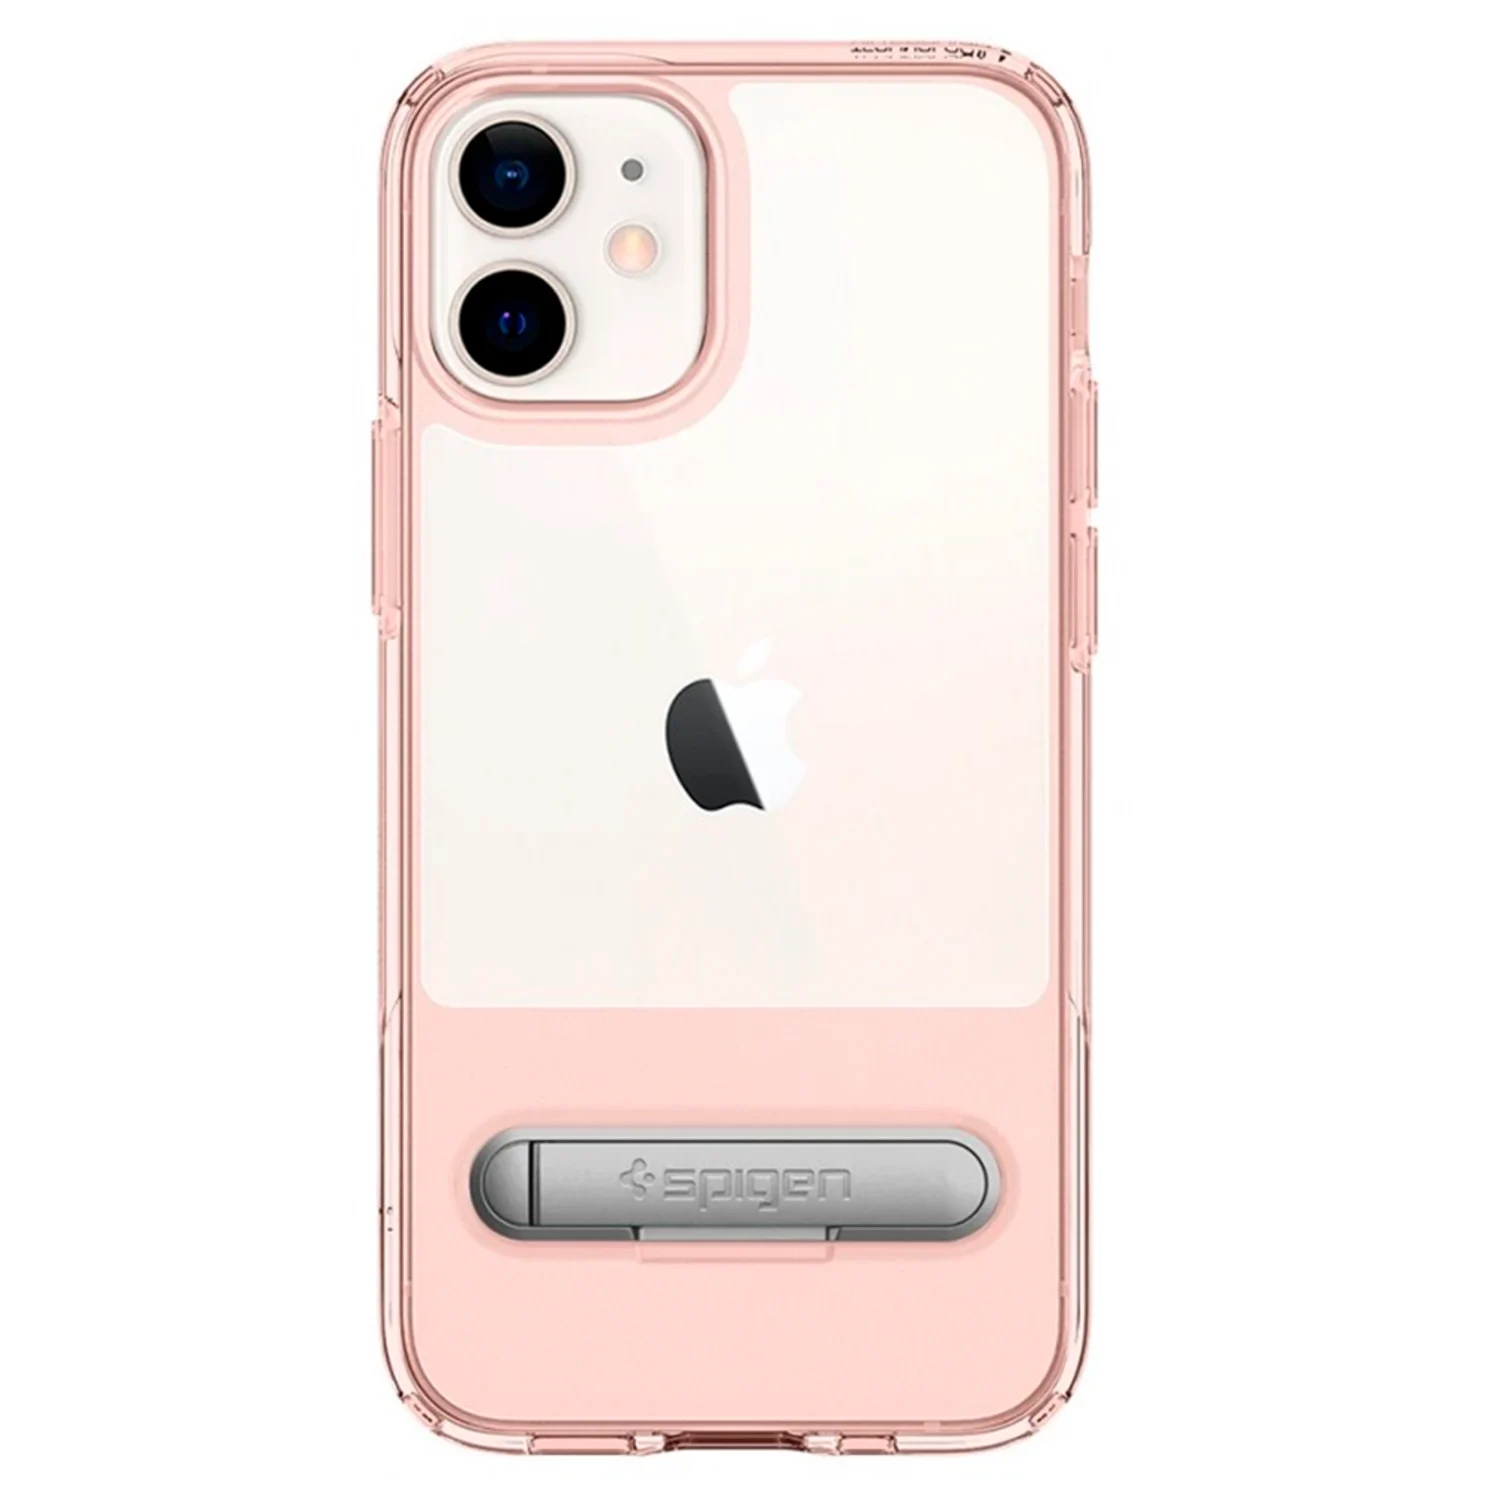 Case protetora Slim para iPhone 12 mini - Rose (ACS01554)